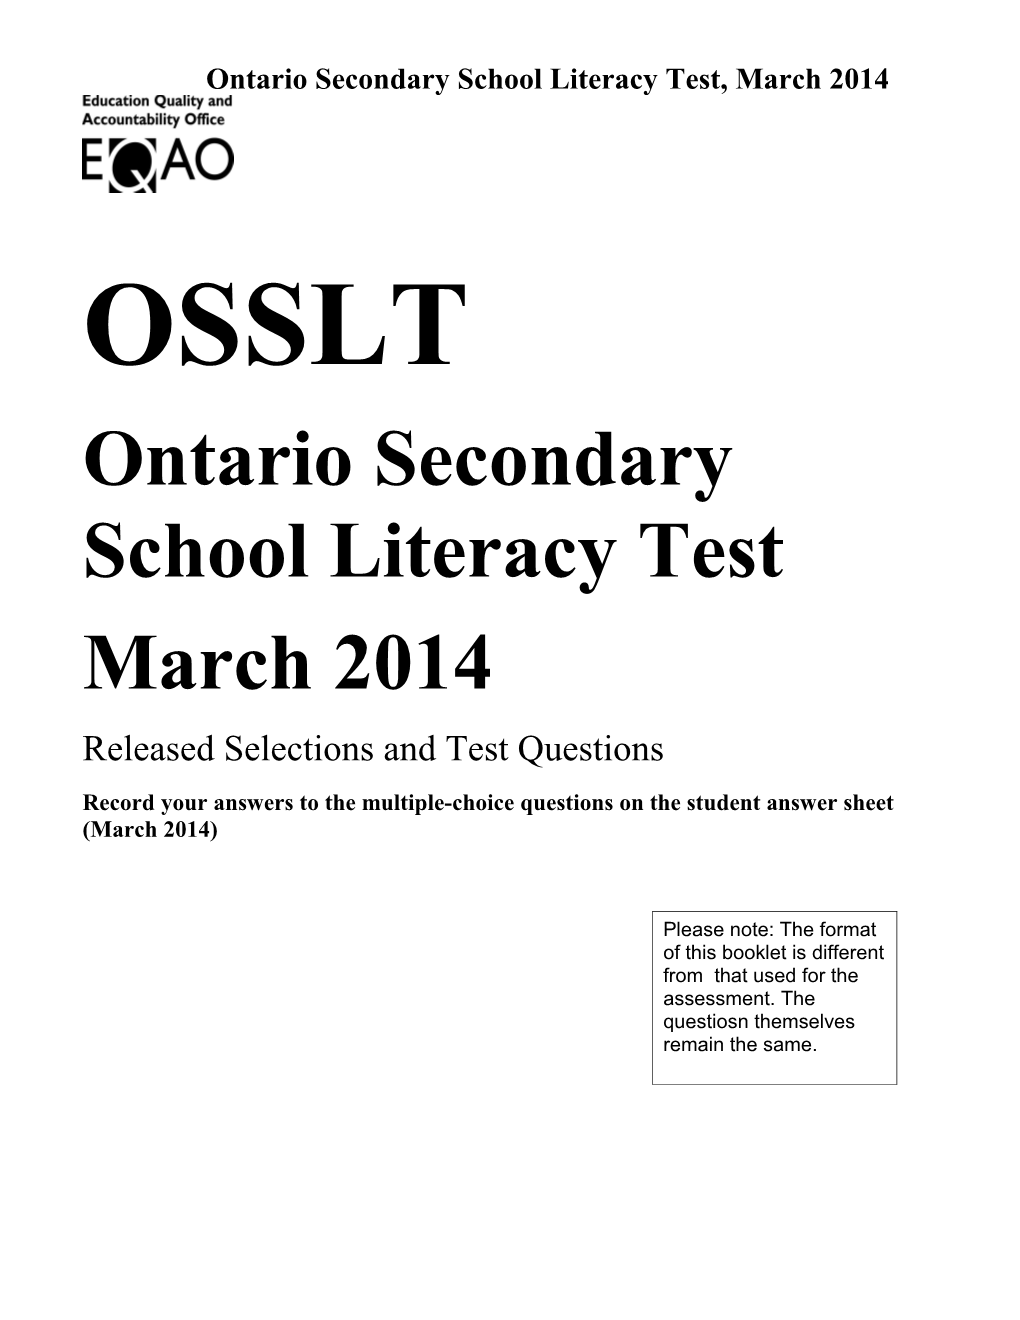 OSSLT, Sample Assessment Booklet: Word Optimized for Premier, 2014